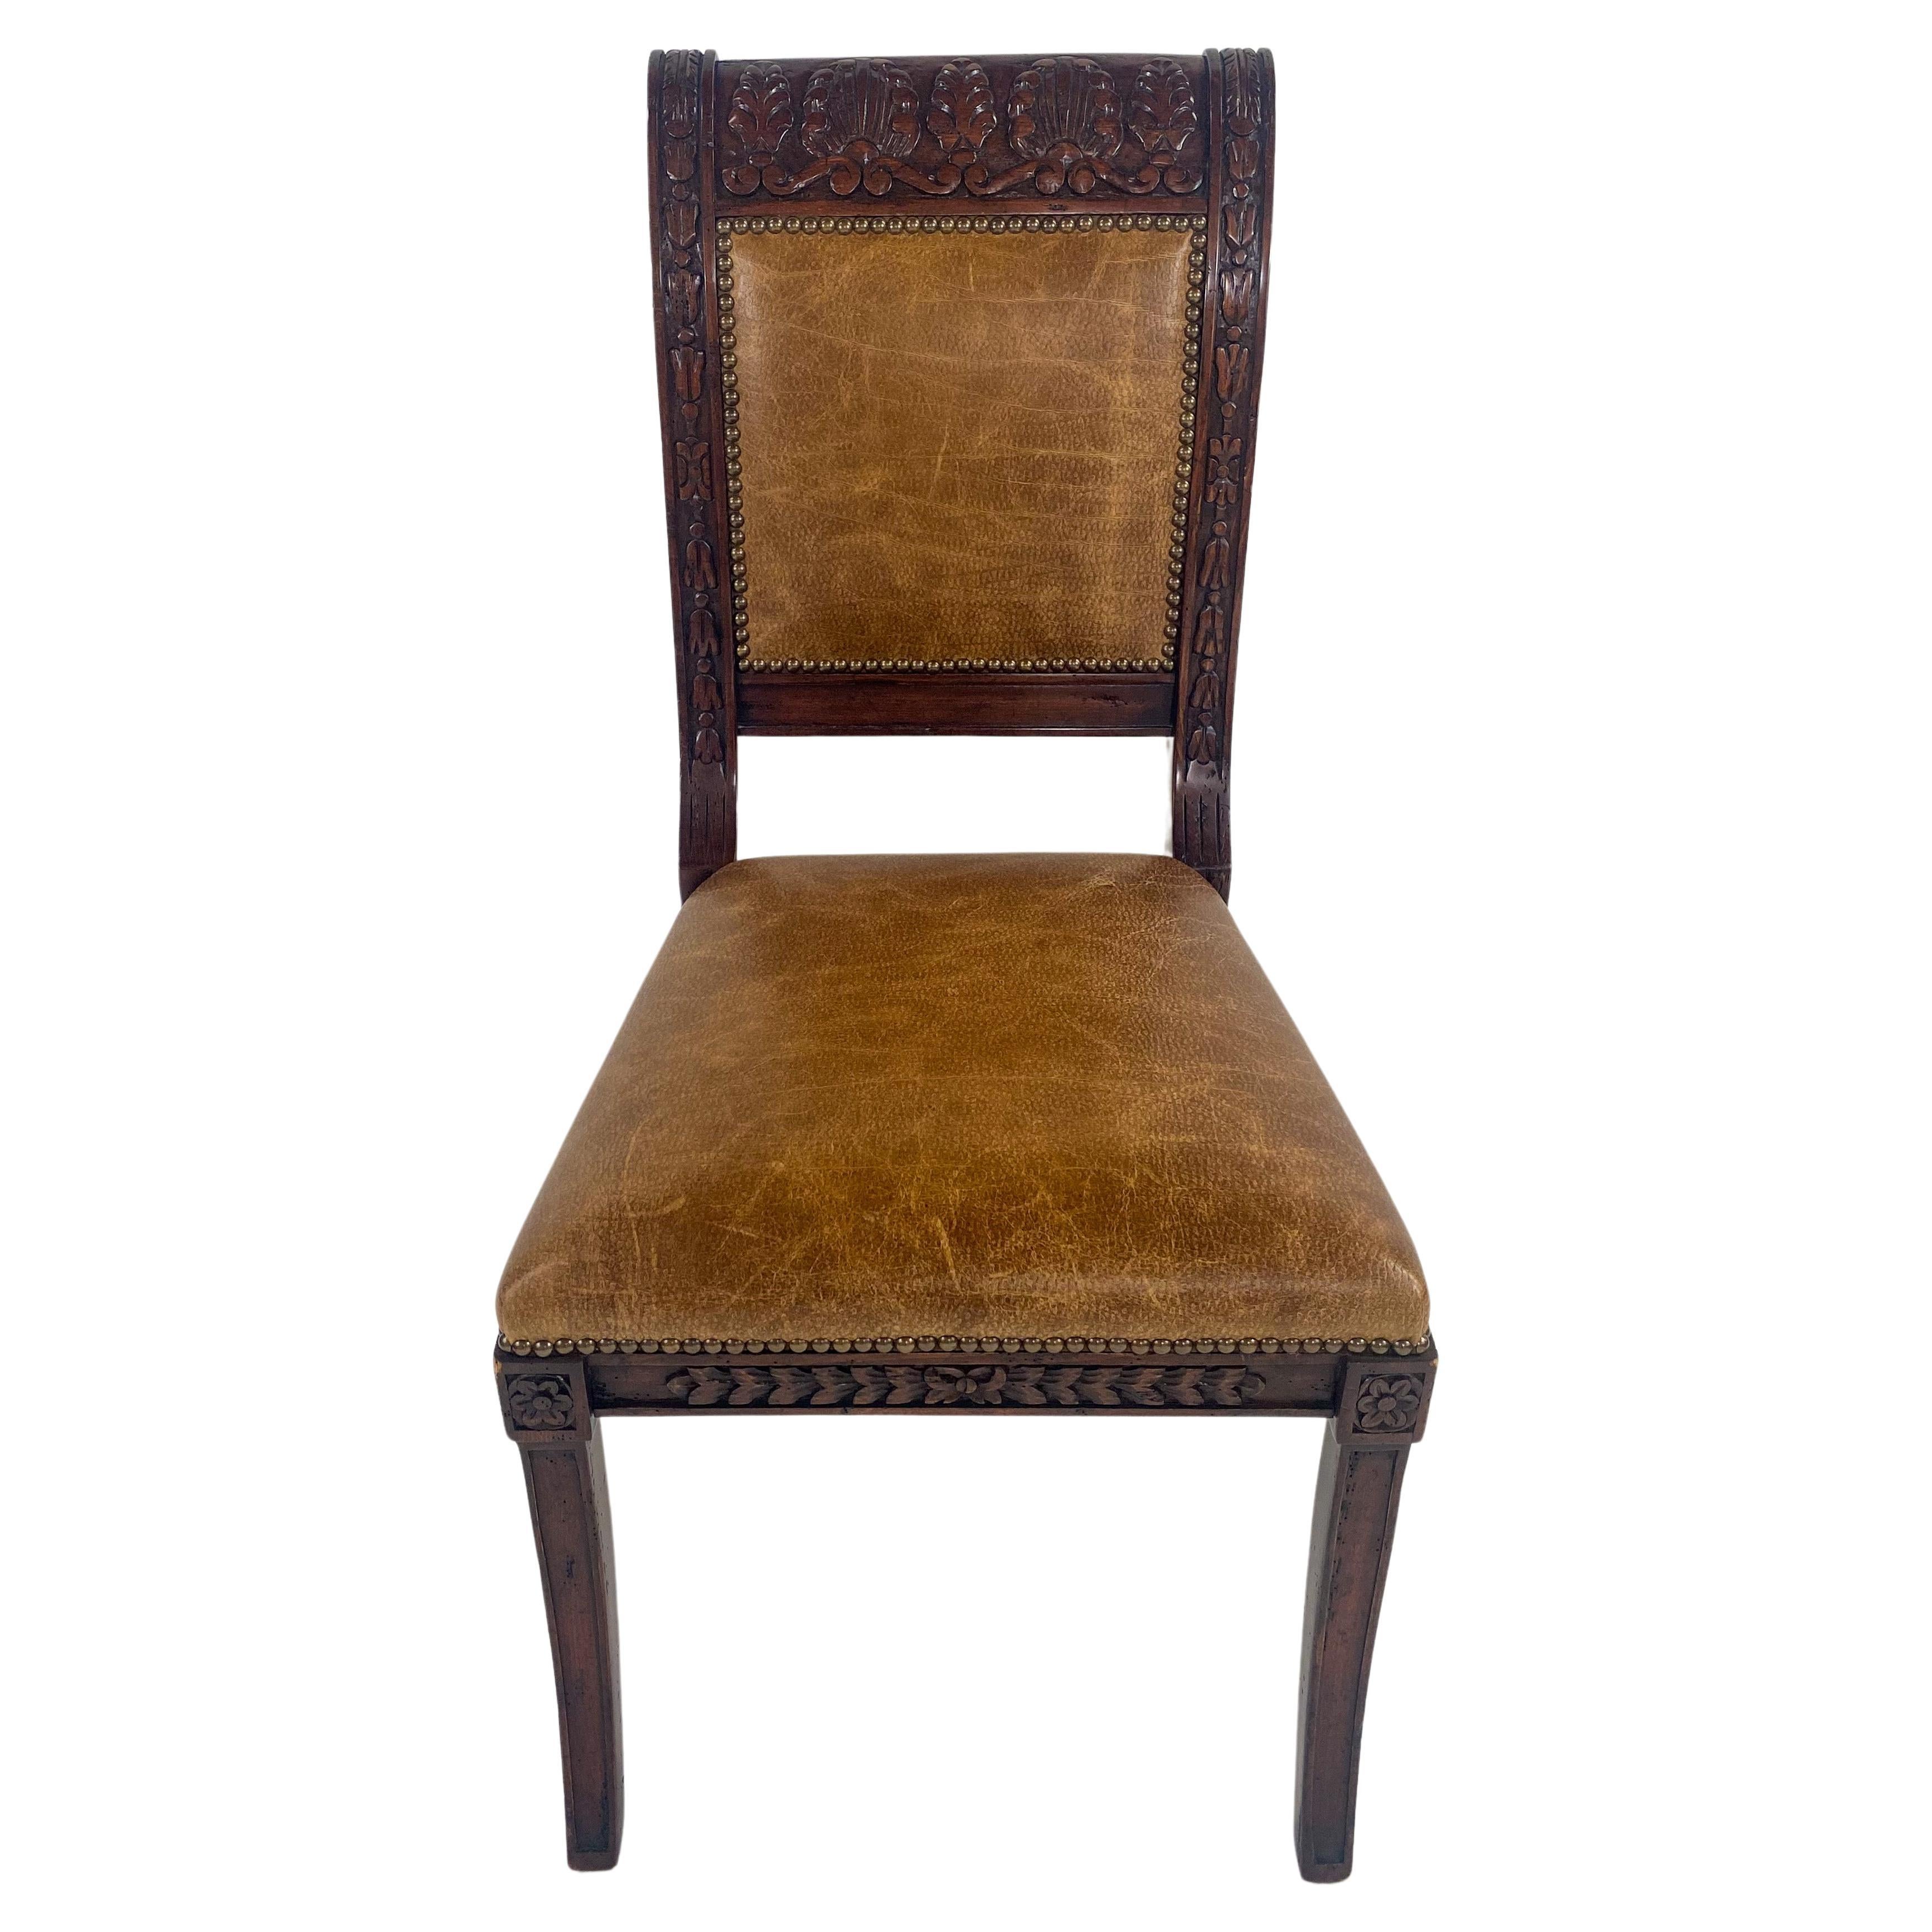 Ein atemberaubender Satz von 8 Esszimmerstühlen im französischen Empire-Stil. Die Stühle sind aus hochwertigem Mahagoniholz gefertigt. Der Rahmen ist exquisit handgeschnitzt und zeigt erstaunliche Blumen- und Akanthusmuster. Die Rückenlehne und der